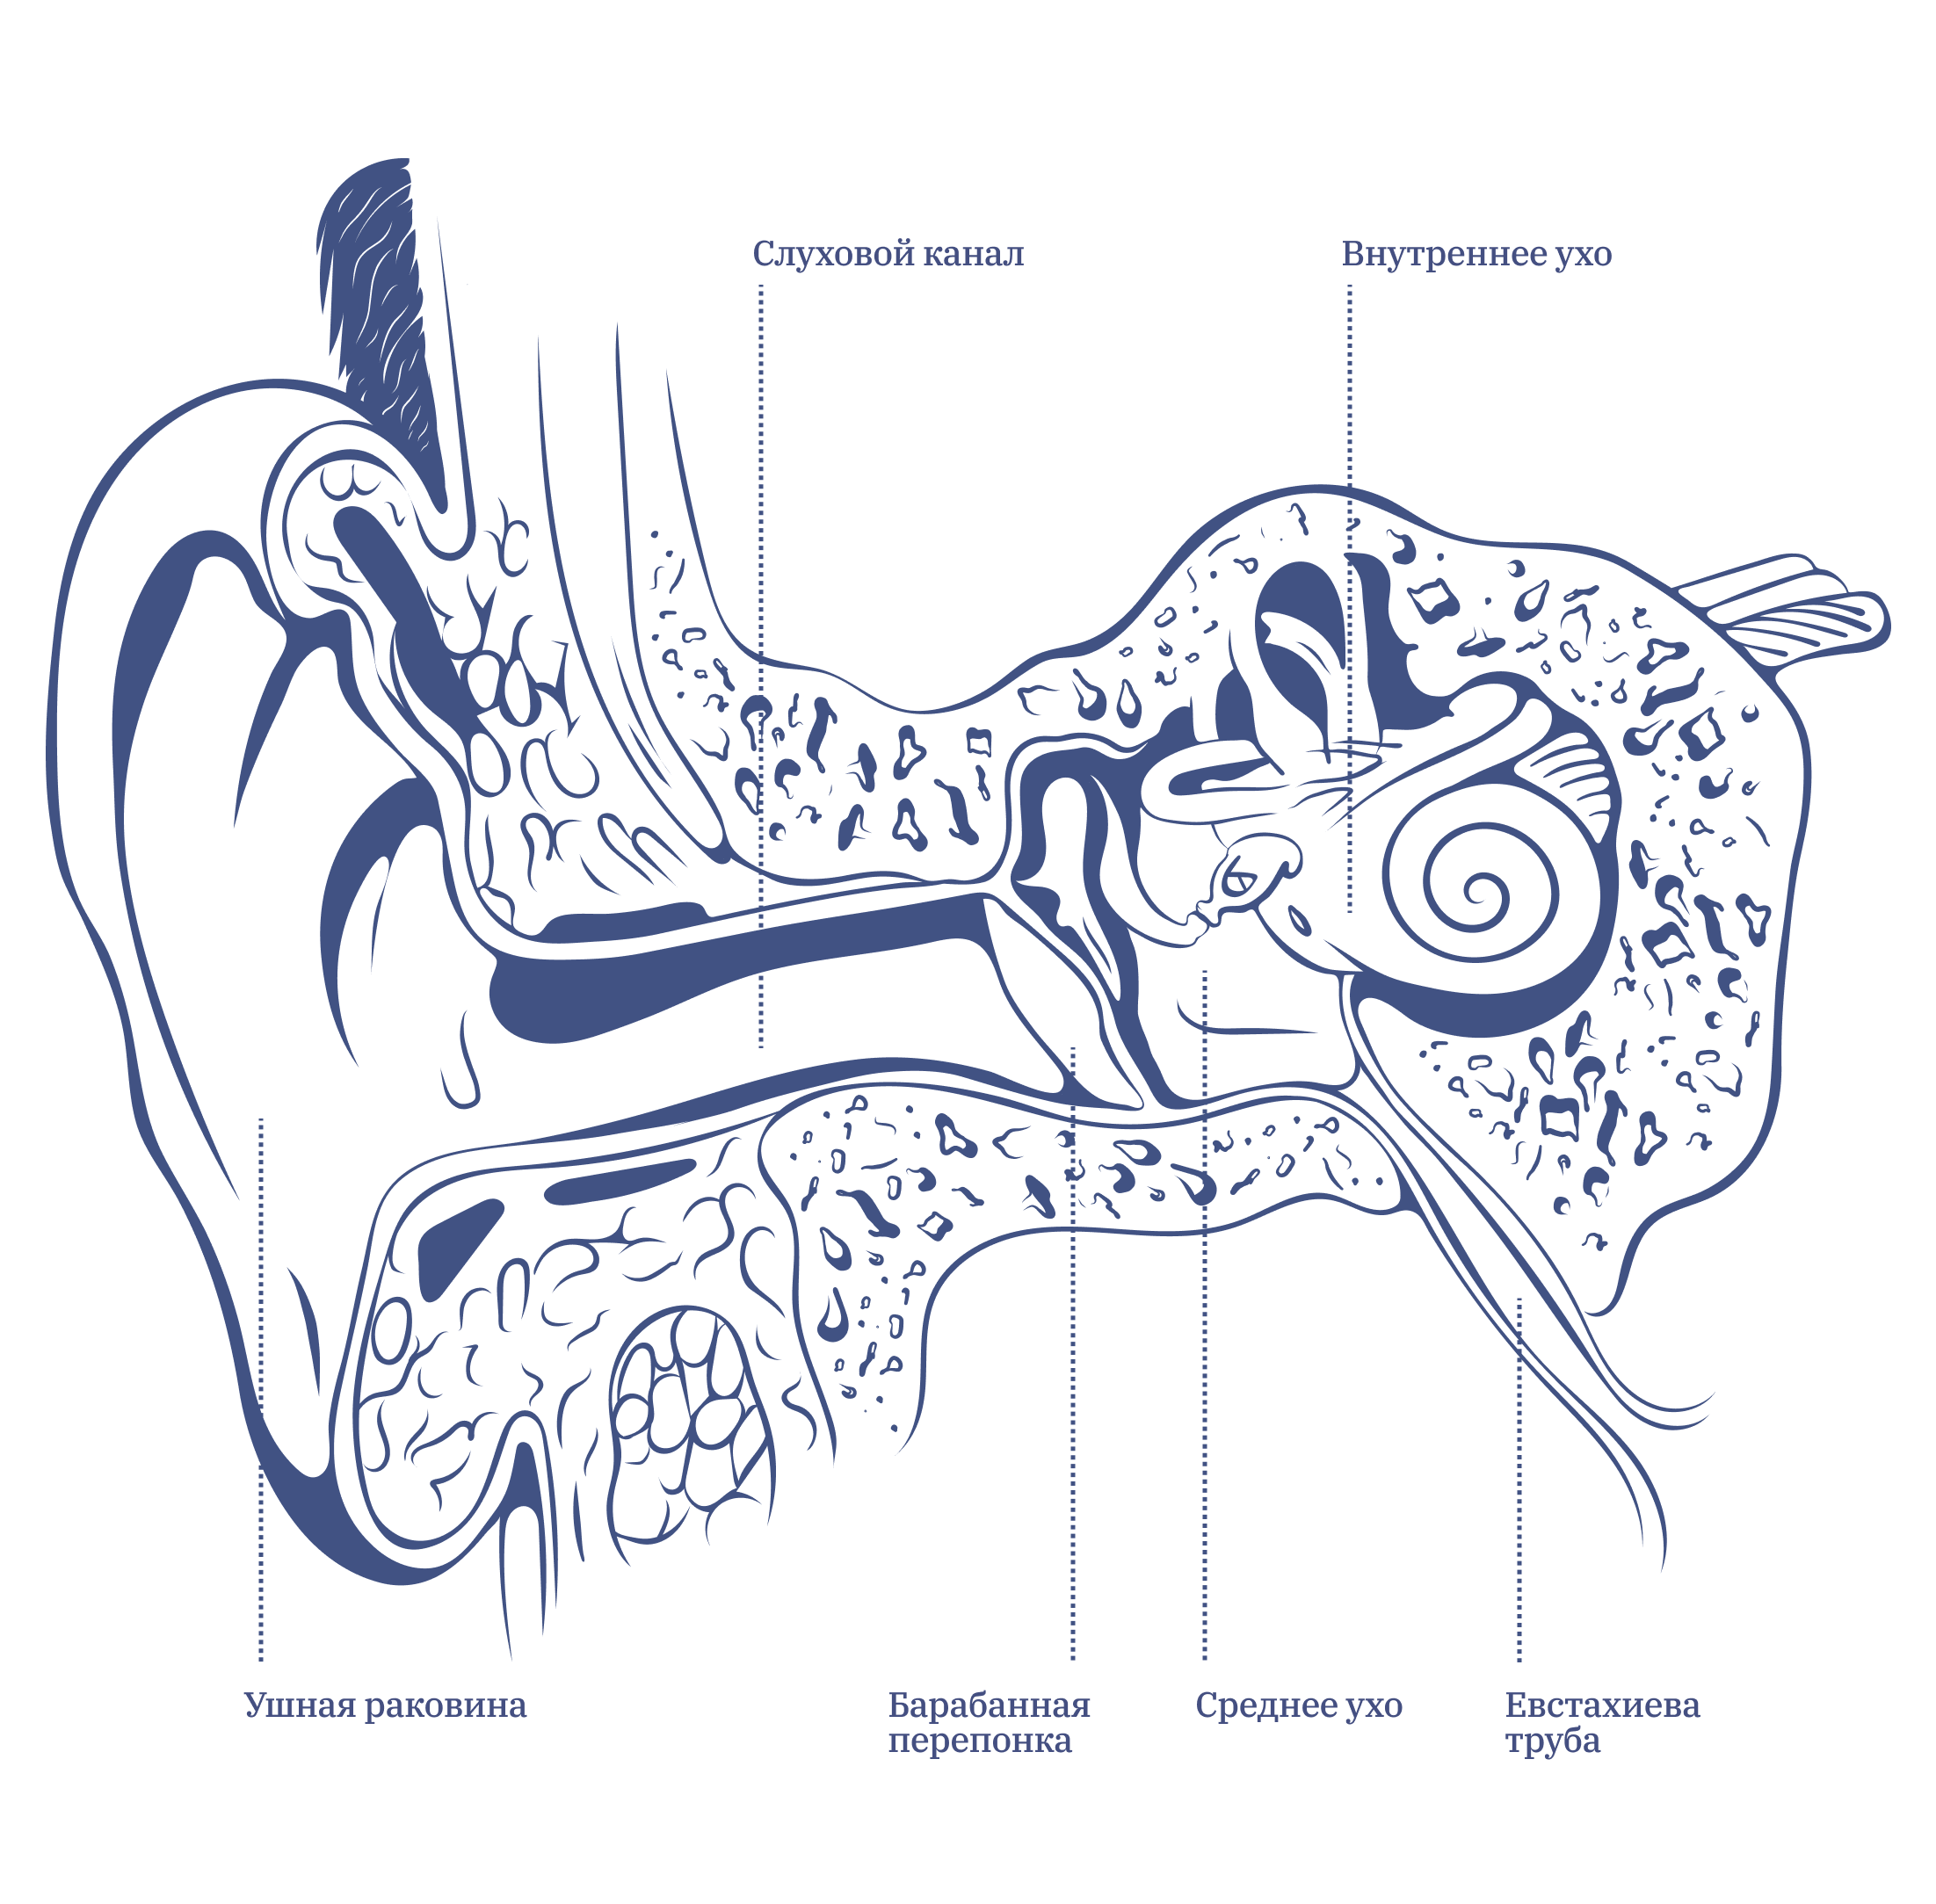 Схема ушных проходов человека. Глубокая ушная раковина. Кровоснабжение внутреннего уха.